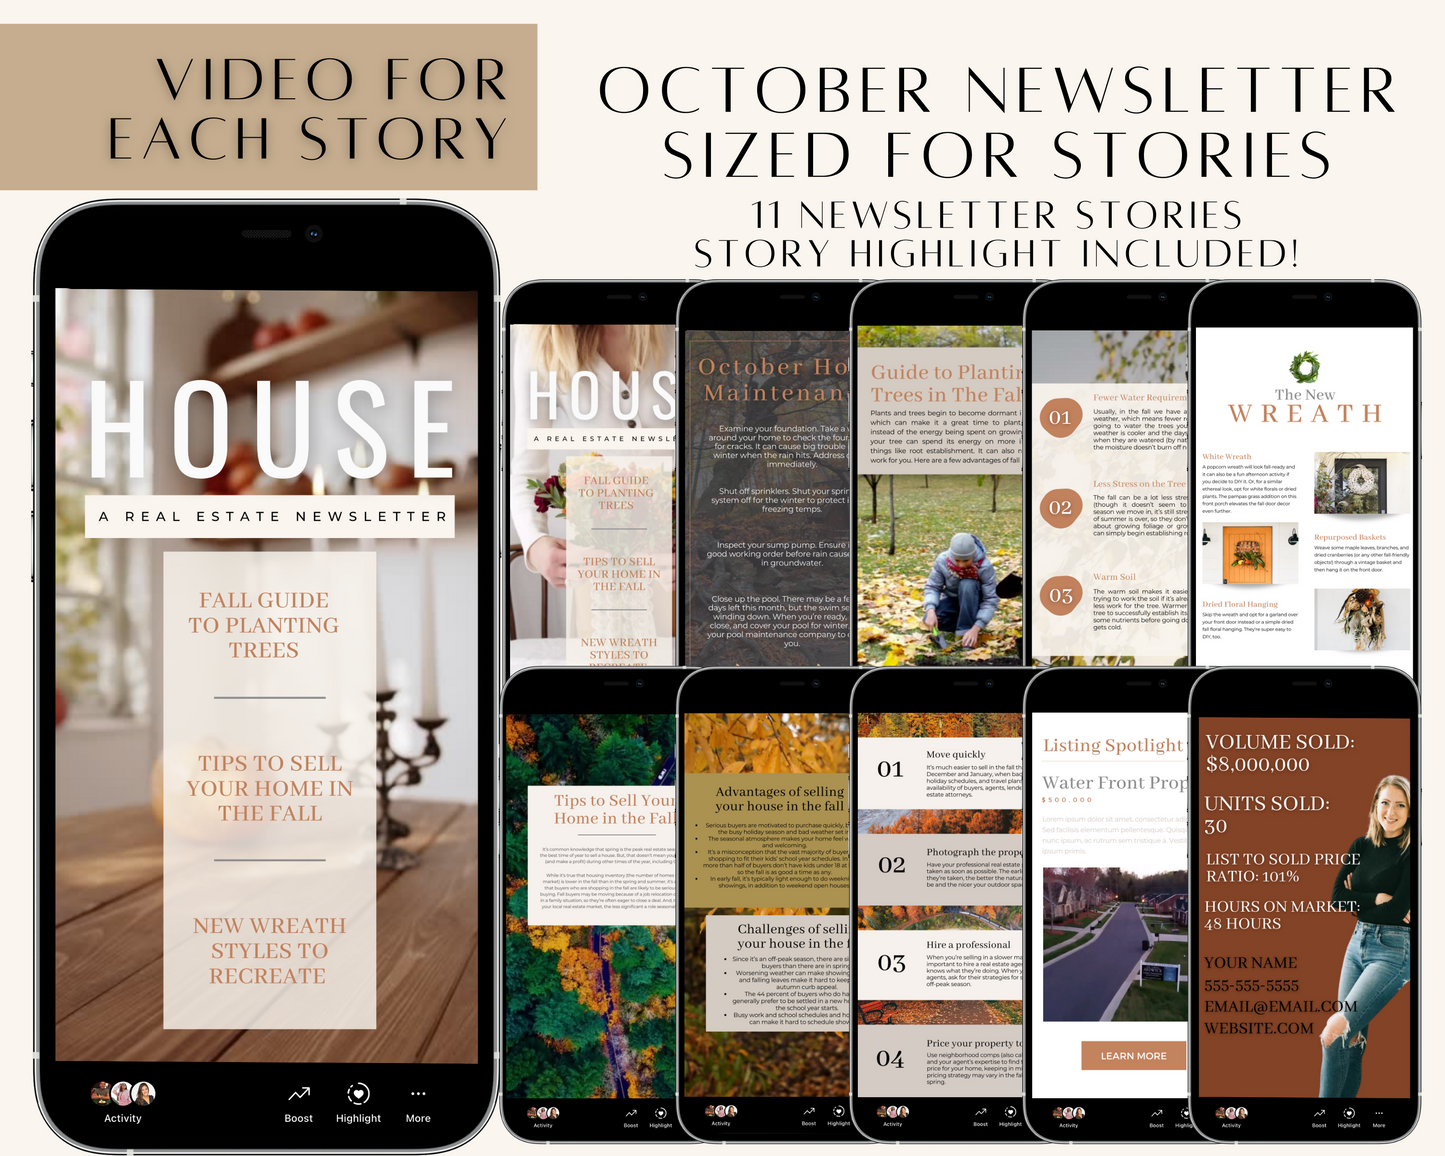 October Newsletter for Stories